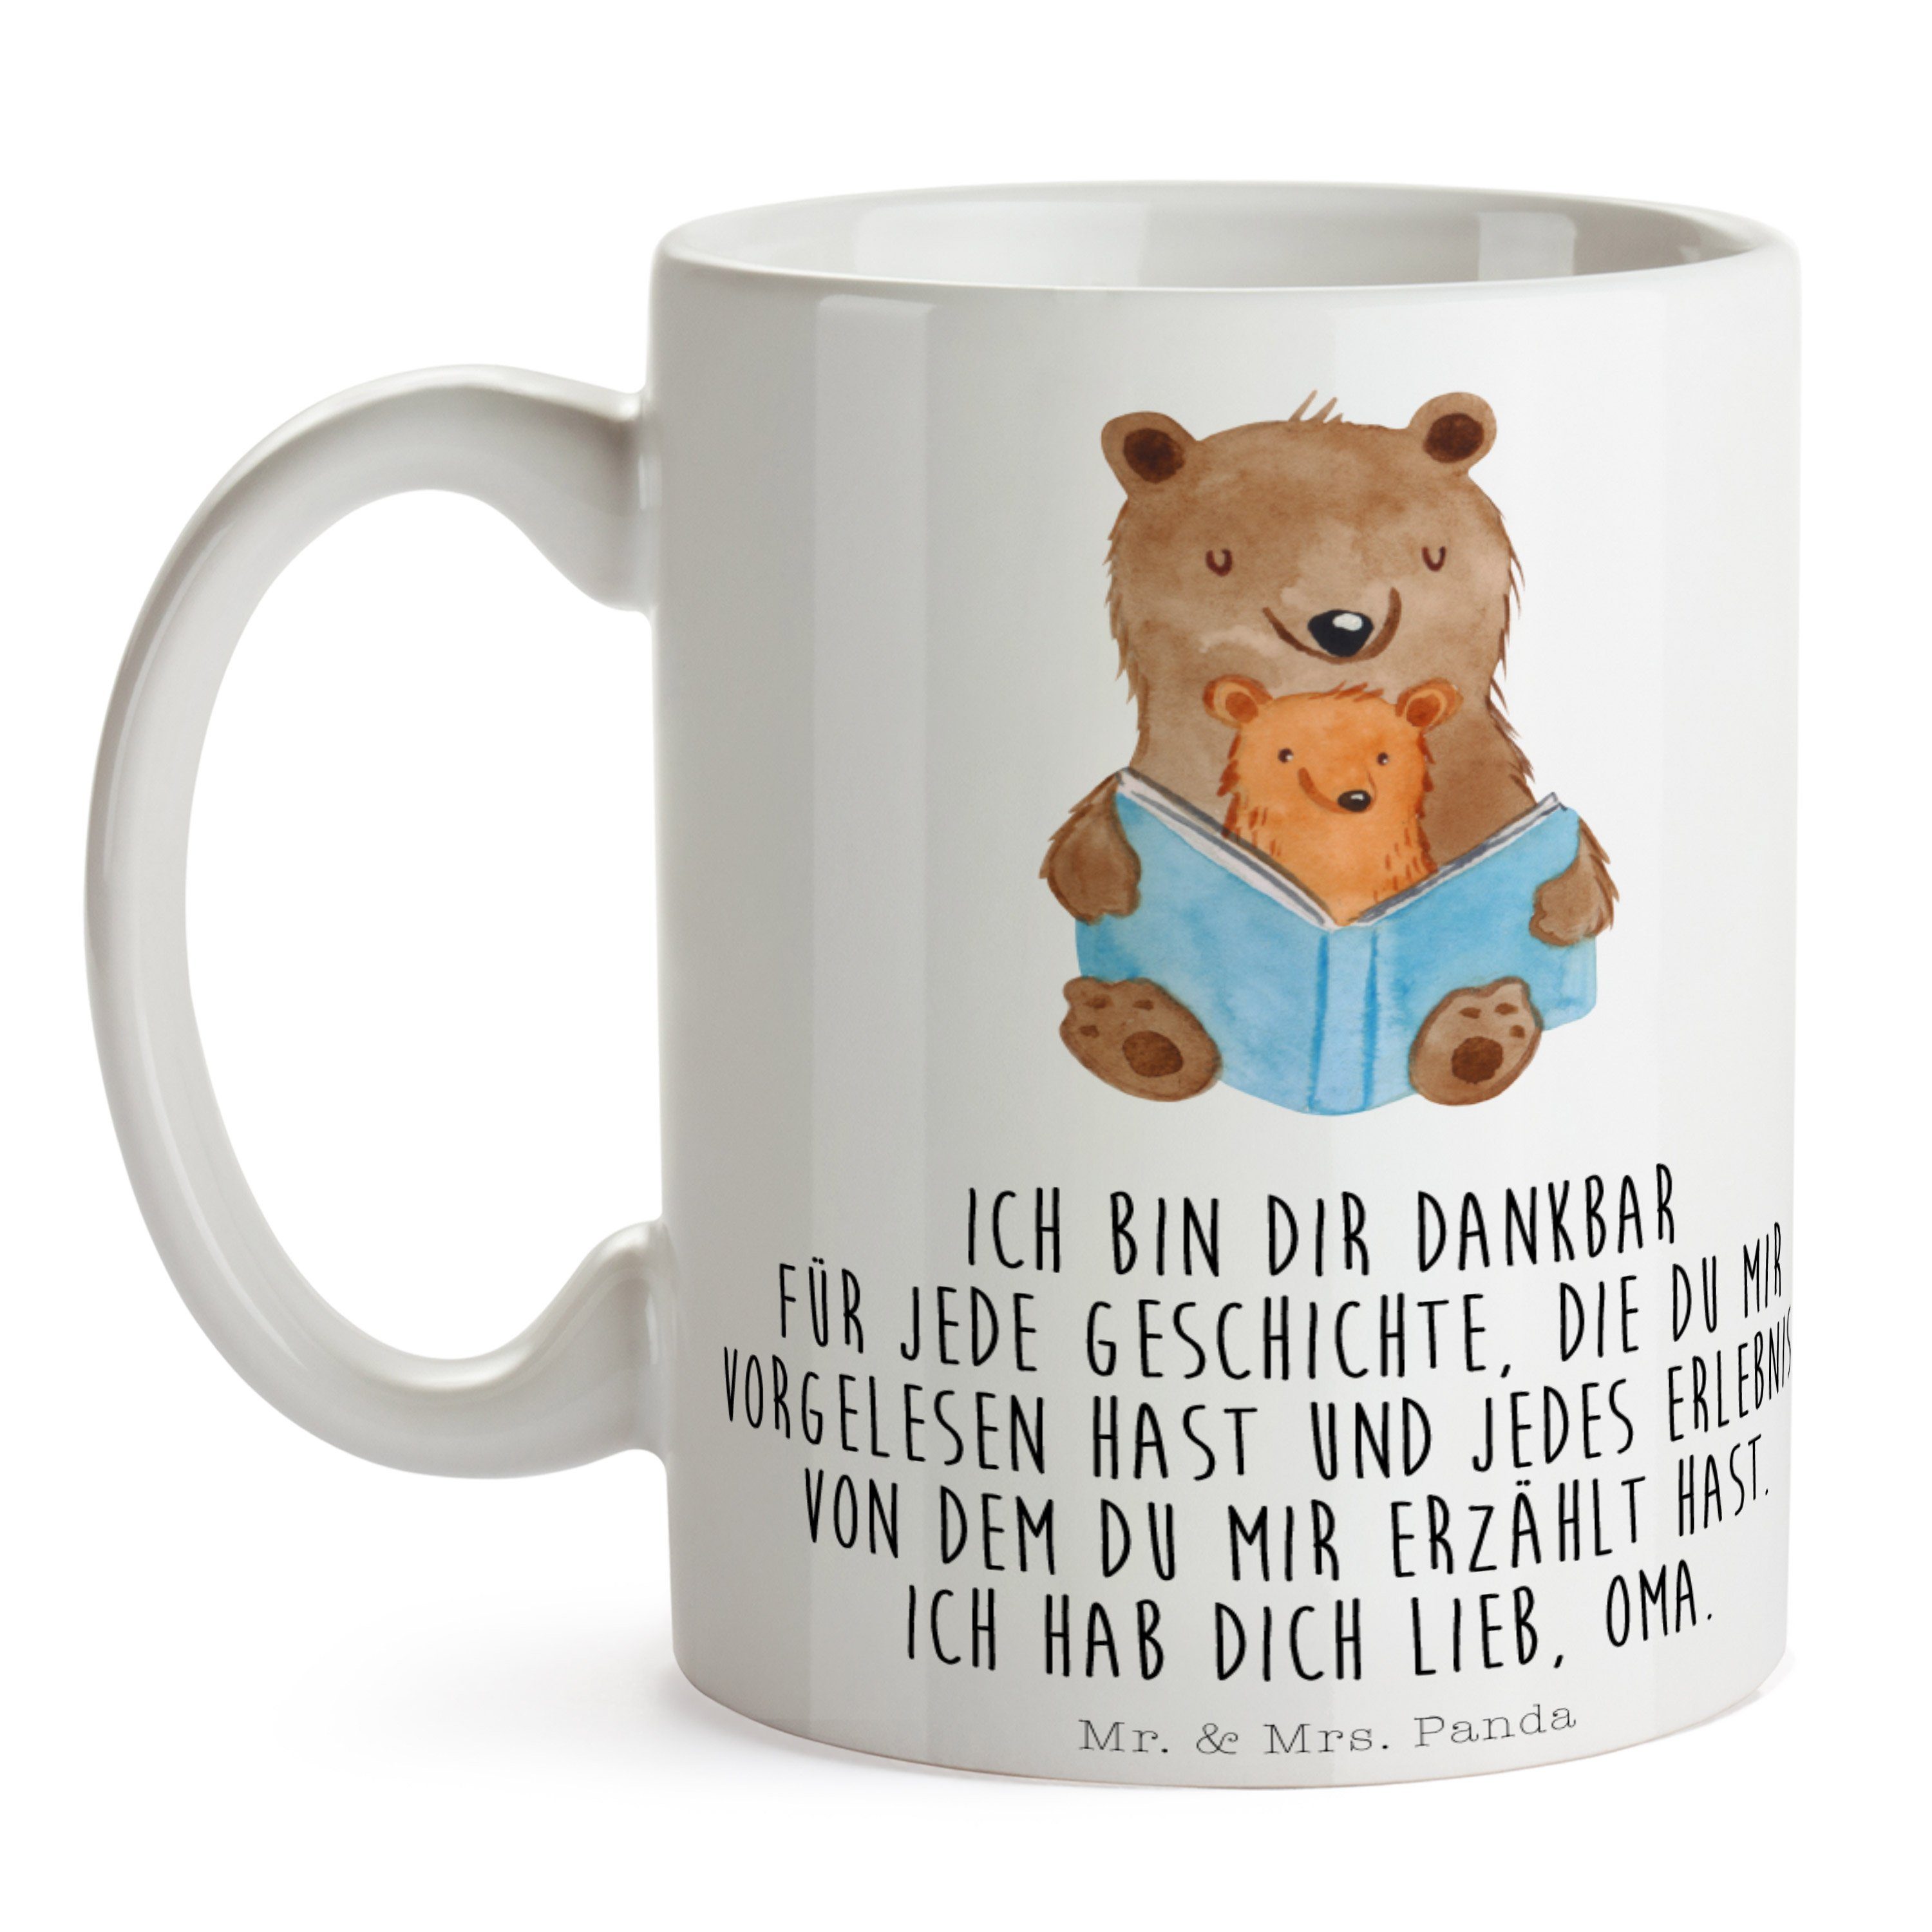 Mr. & Mrs. Panda Lieblingsoma, Buch - Bären Großmutter Tasse Geschenk Weiß Keramik - Geschenk, Oma